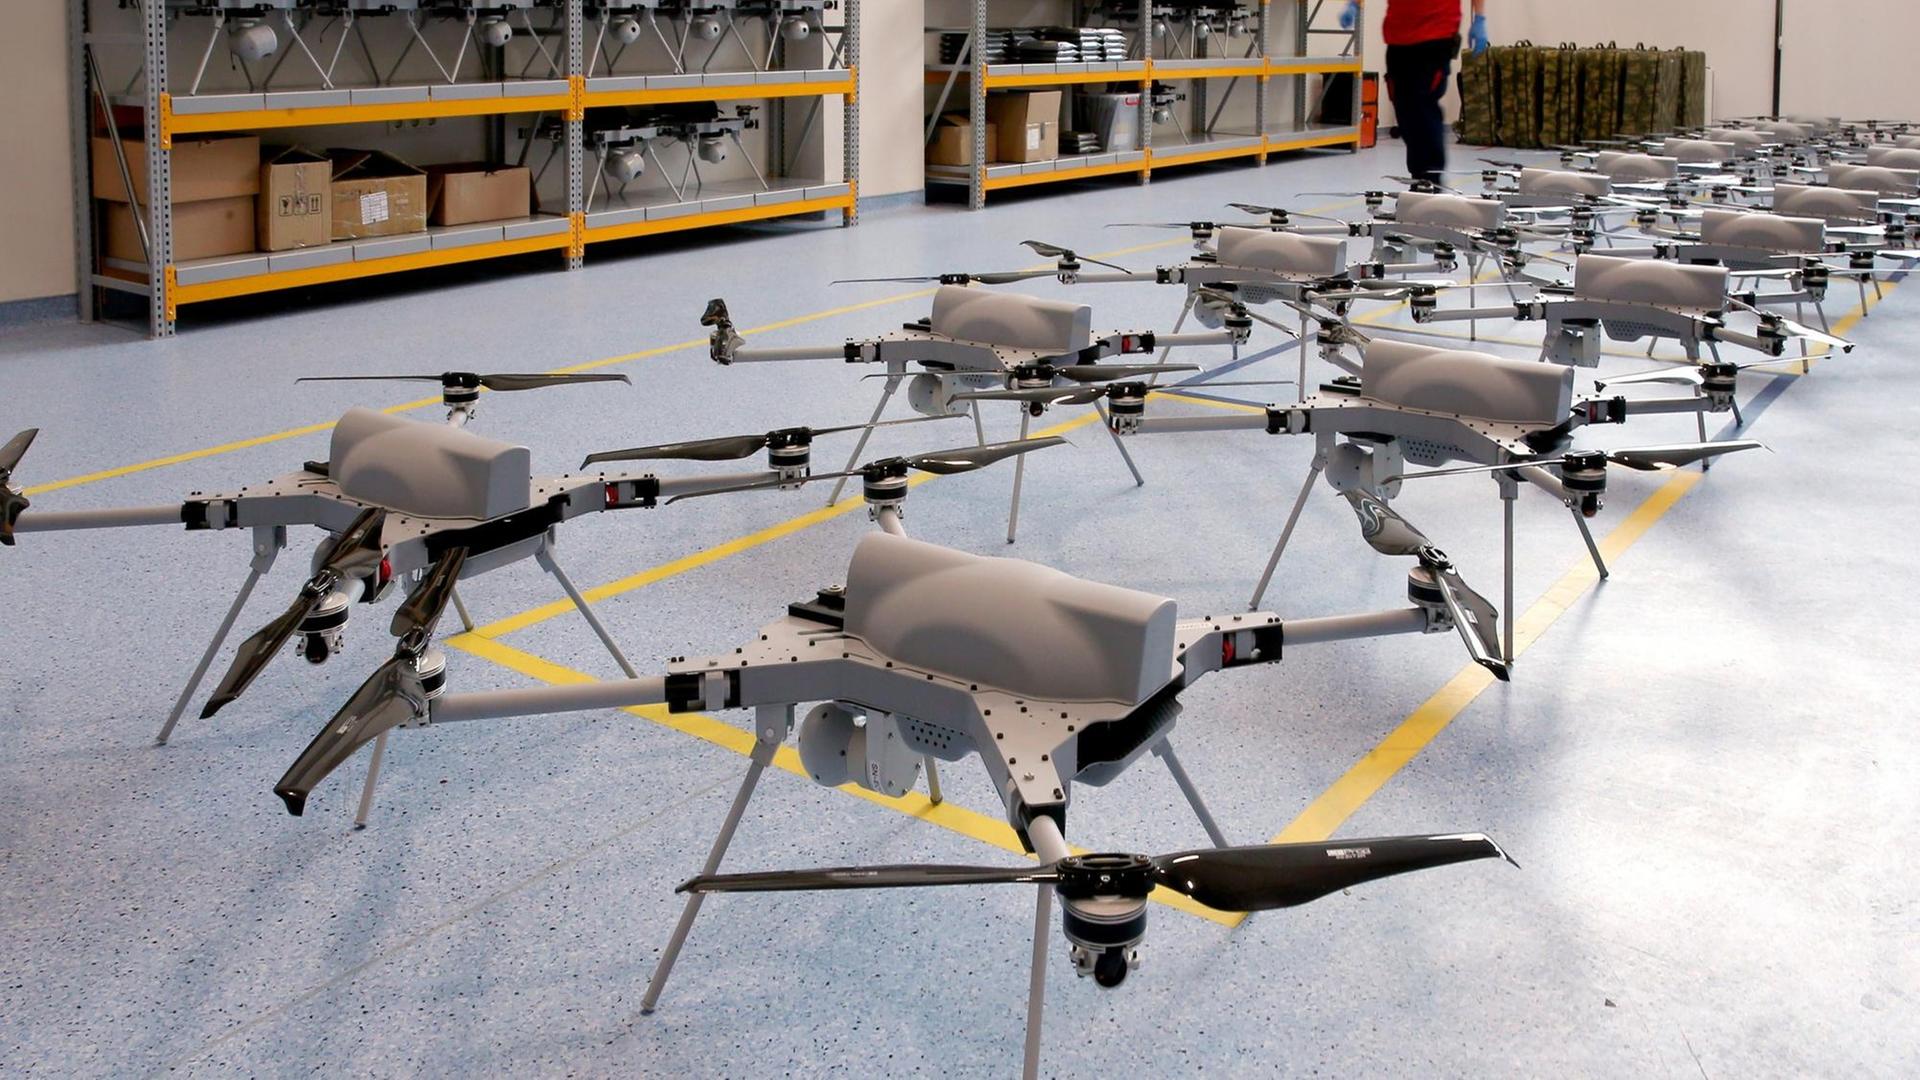 Aufgereihte Drohnen des Typs Kargu stehen nebeneinander auf einem blauen Linoliumboden in einer Lagerhalle des türkischen Herstellers STM